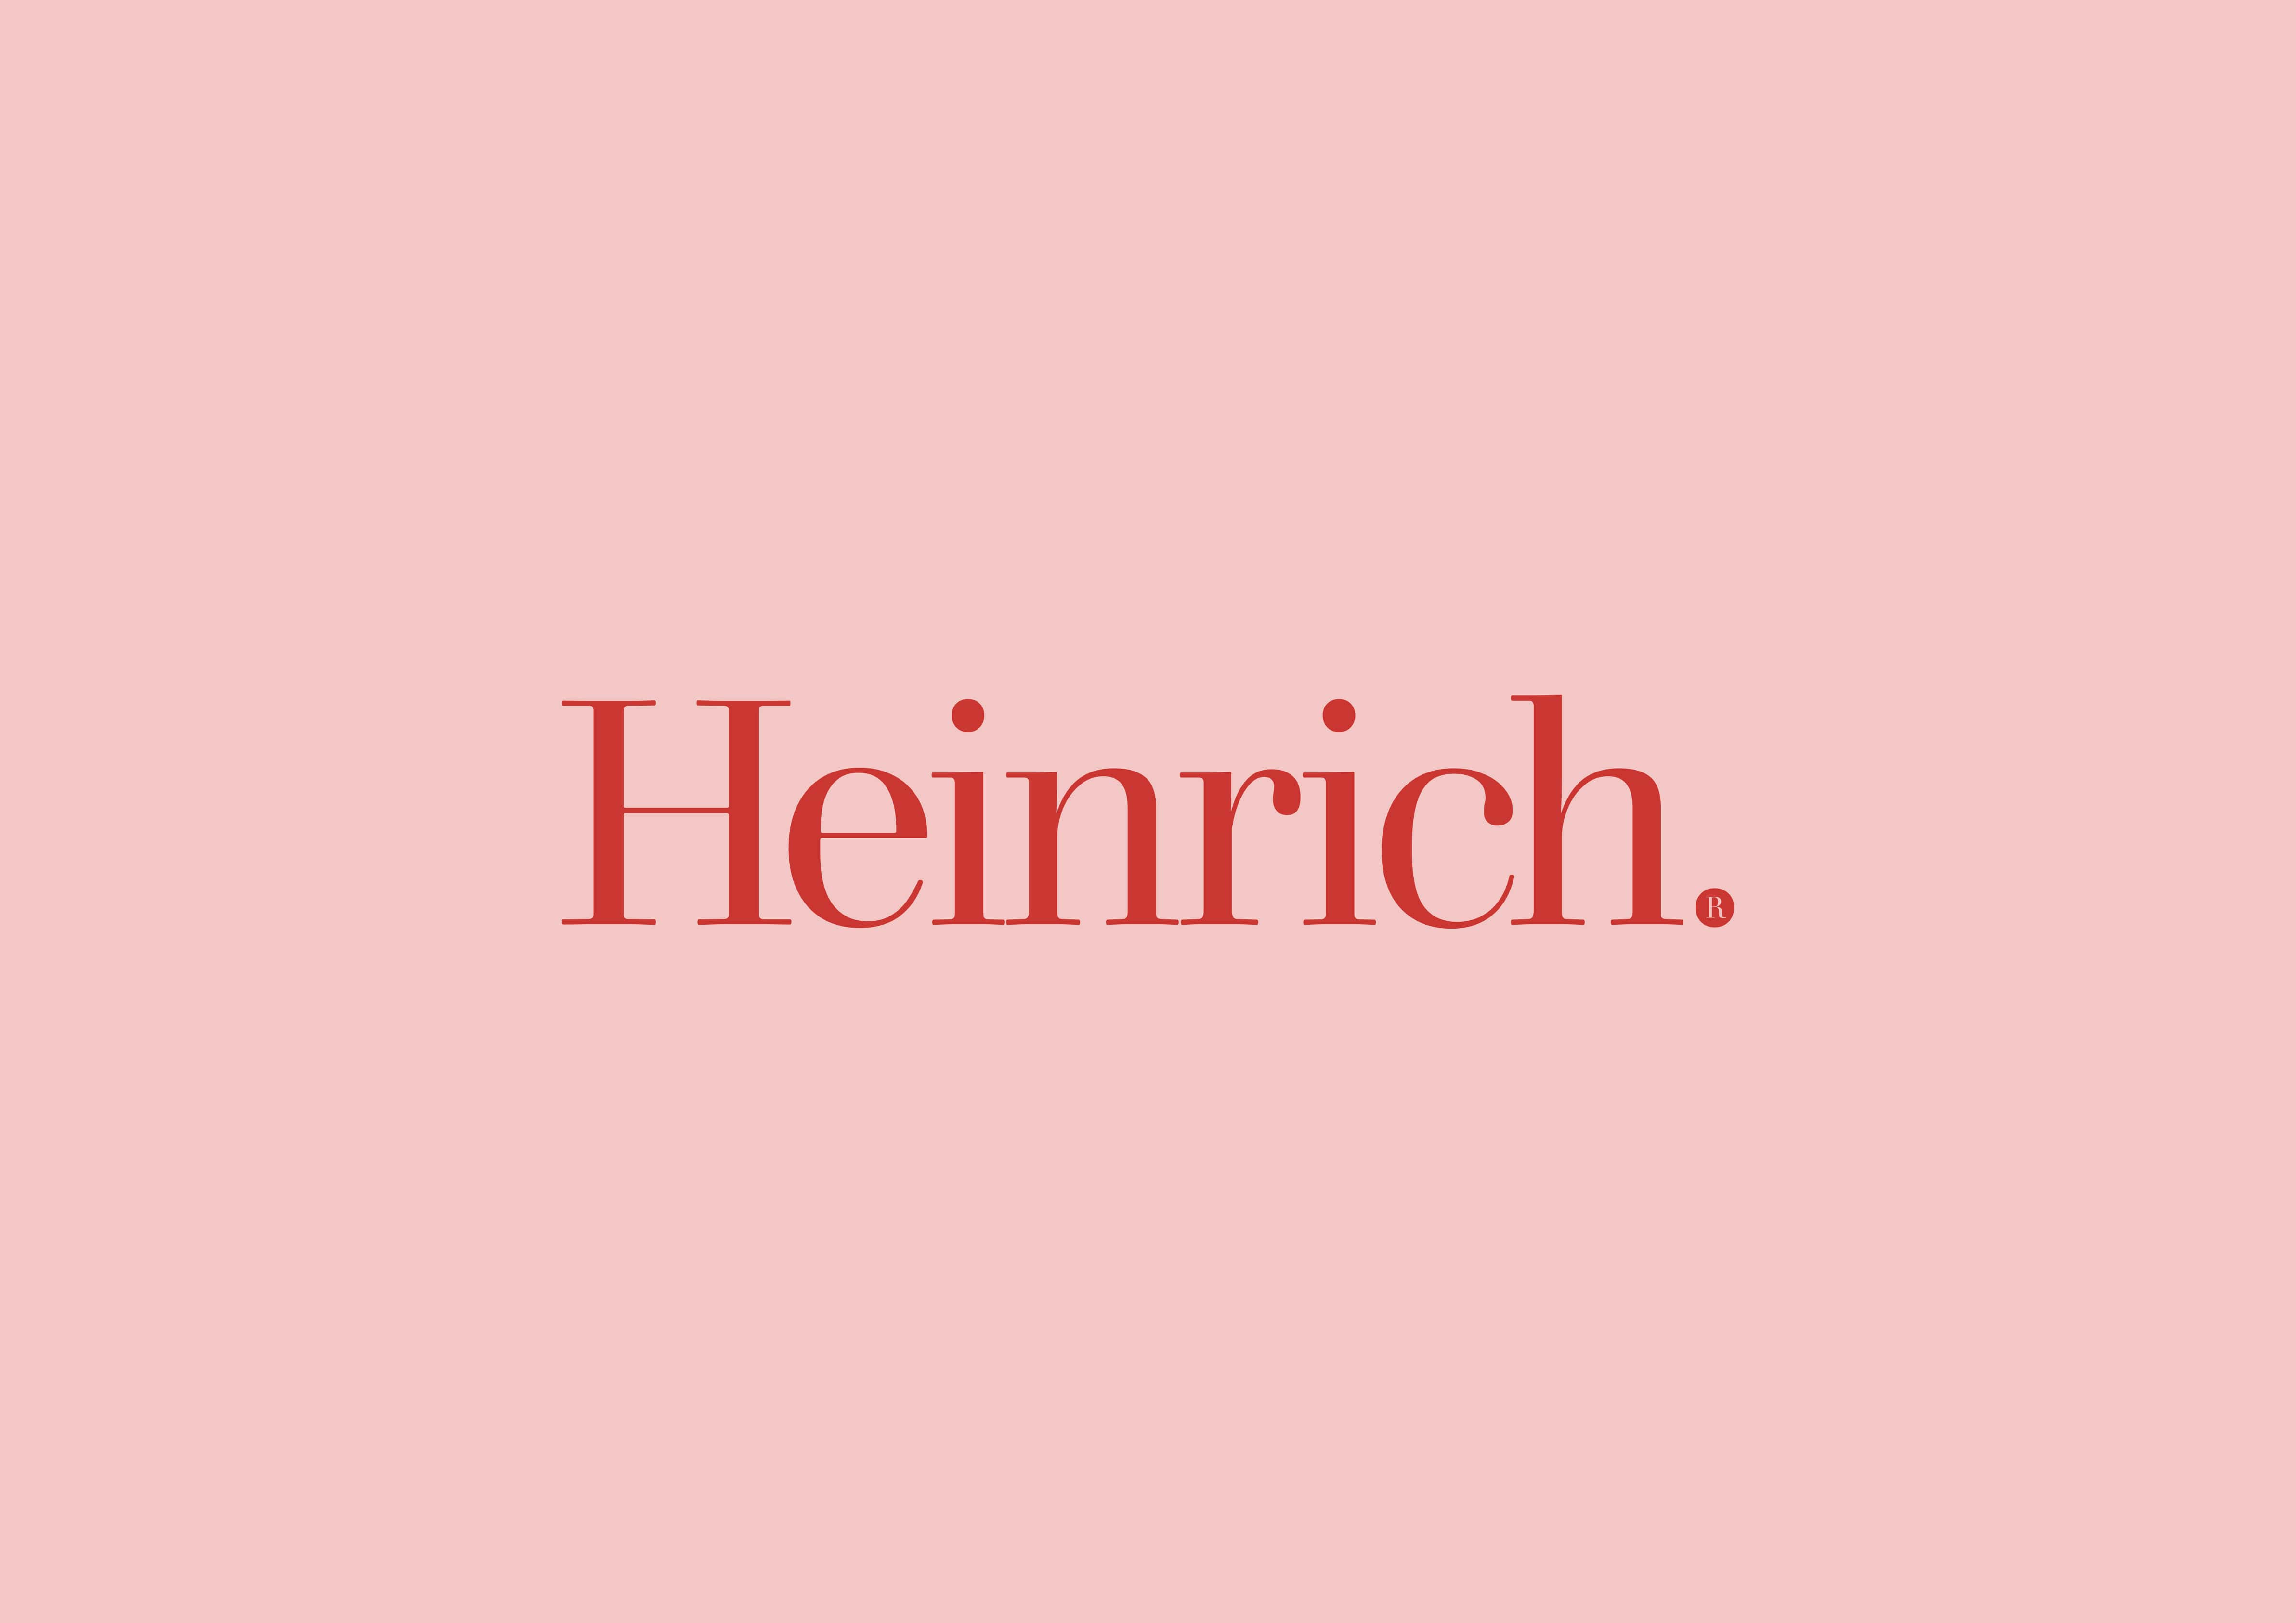 Henirich Medical Equipment Manufacturer